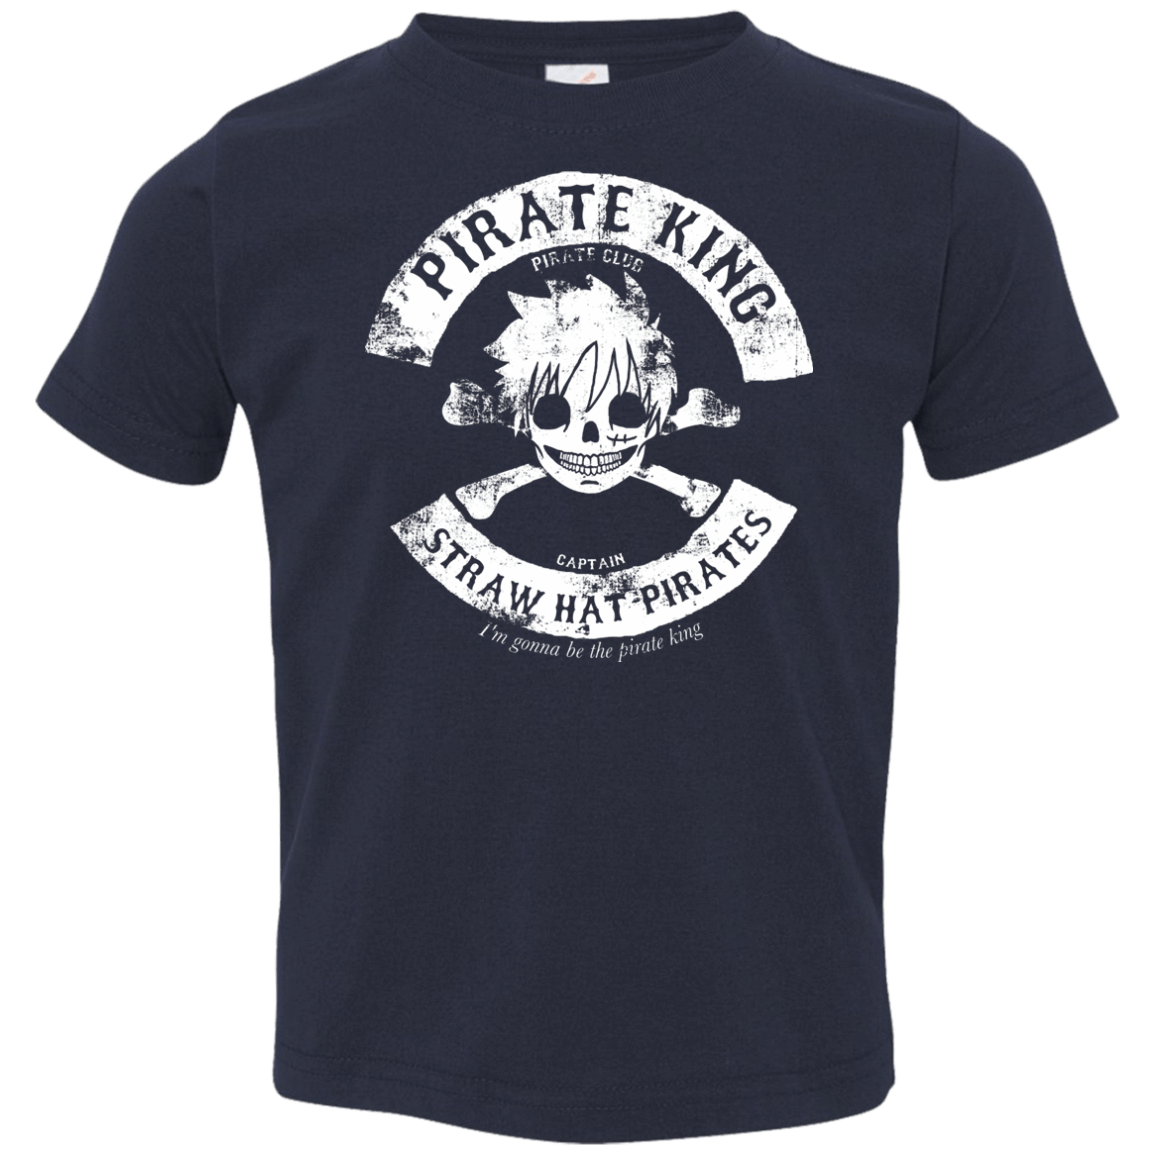 T-Shirts Navy / 2T Pirate King Skull Toddler Premium T-Shirt